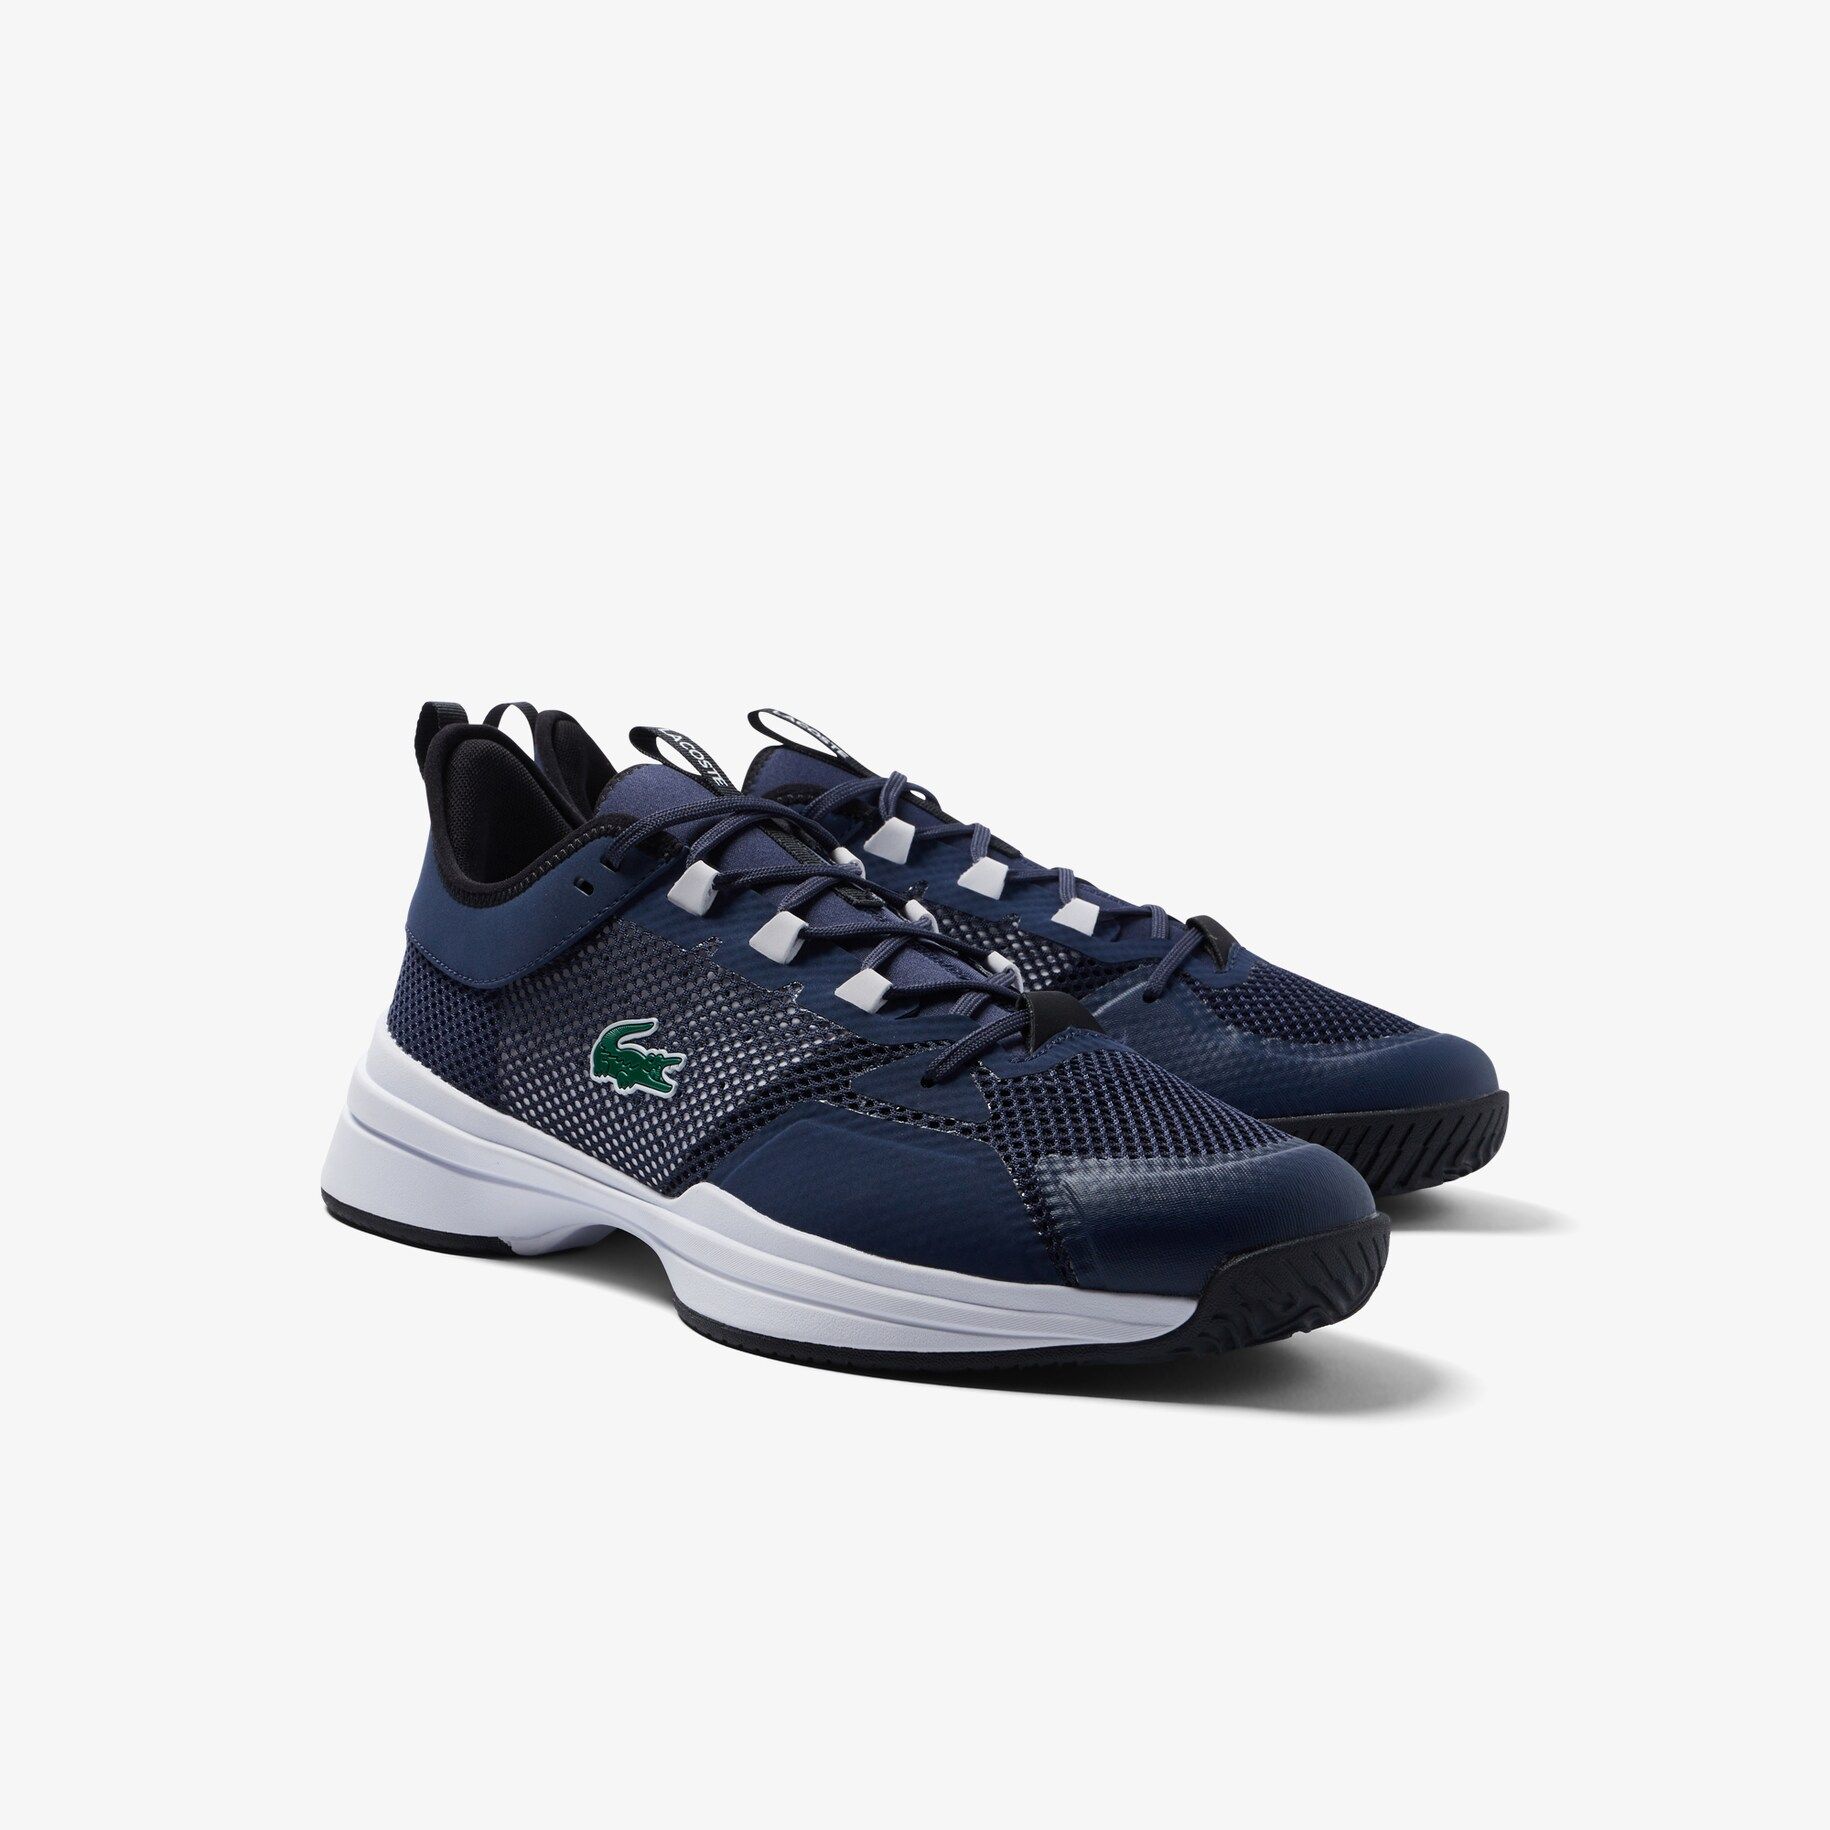 Men's AG-LT21 Tennis Shoes | Lacoste (US)